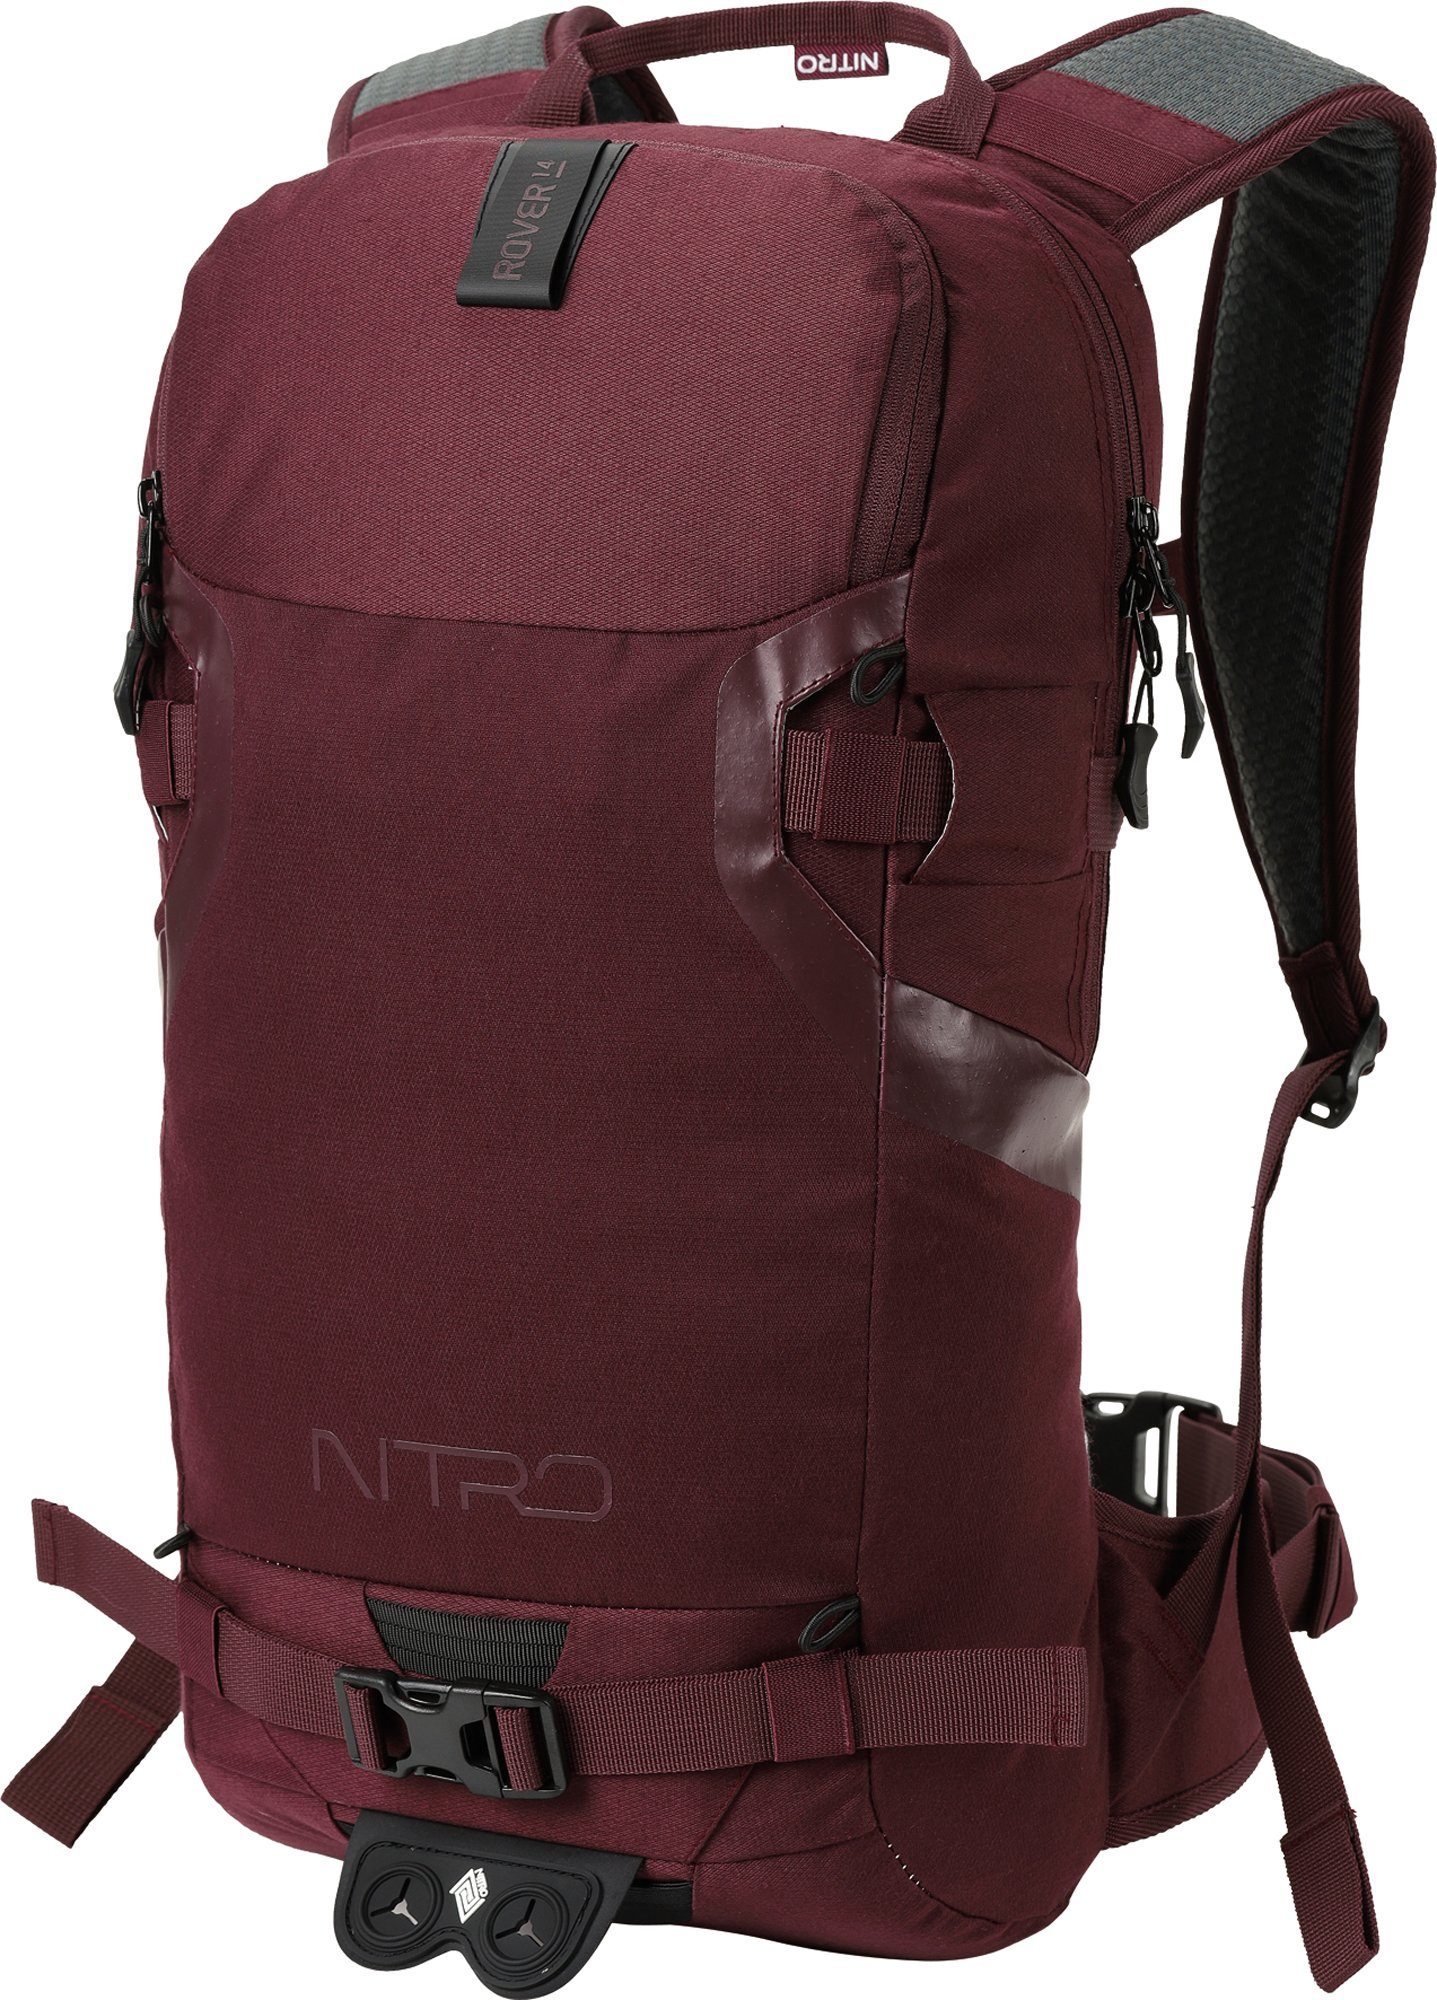 den für speziell Wine, NITRO 14, Wintersport Rover Trekkingrucksack konzipiert